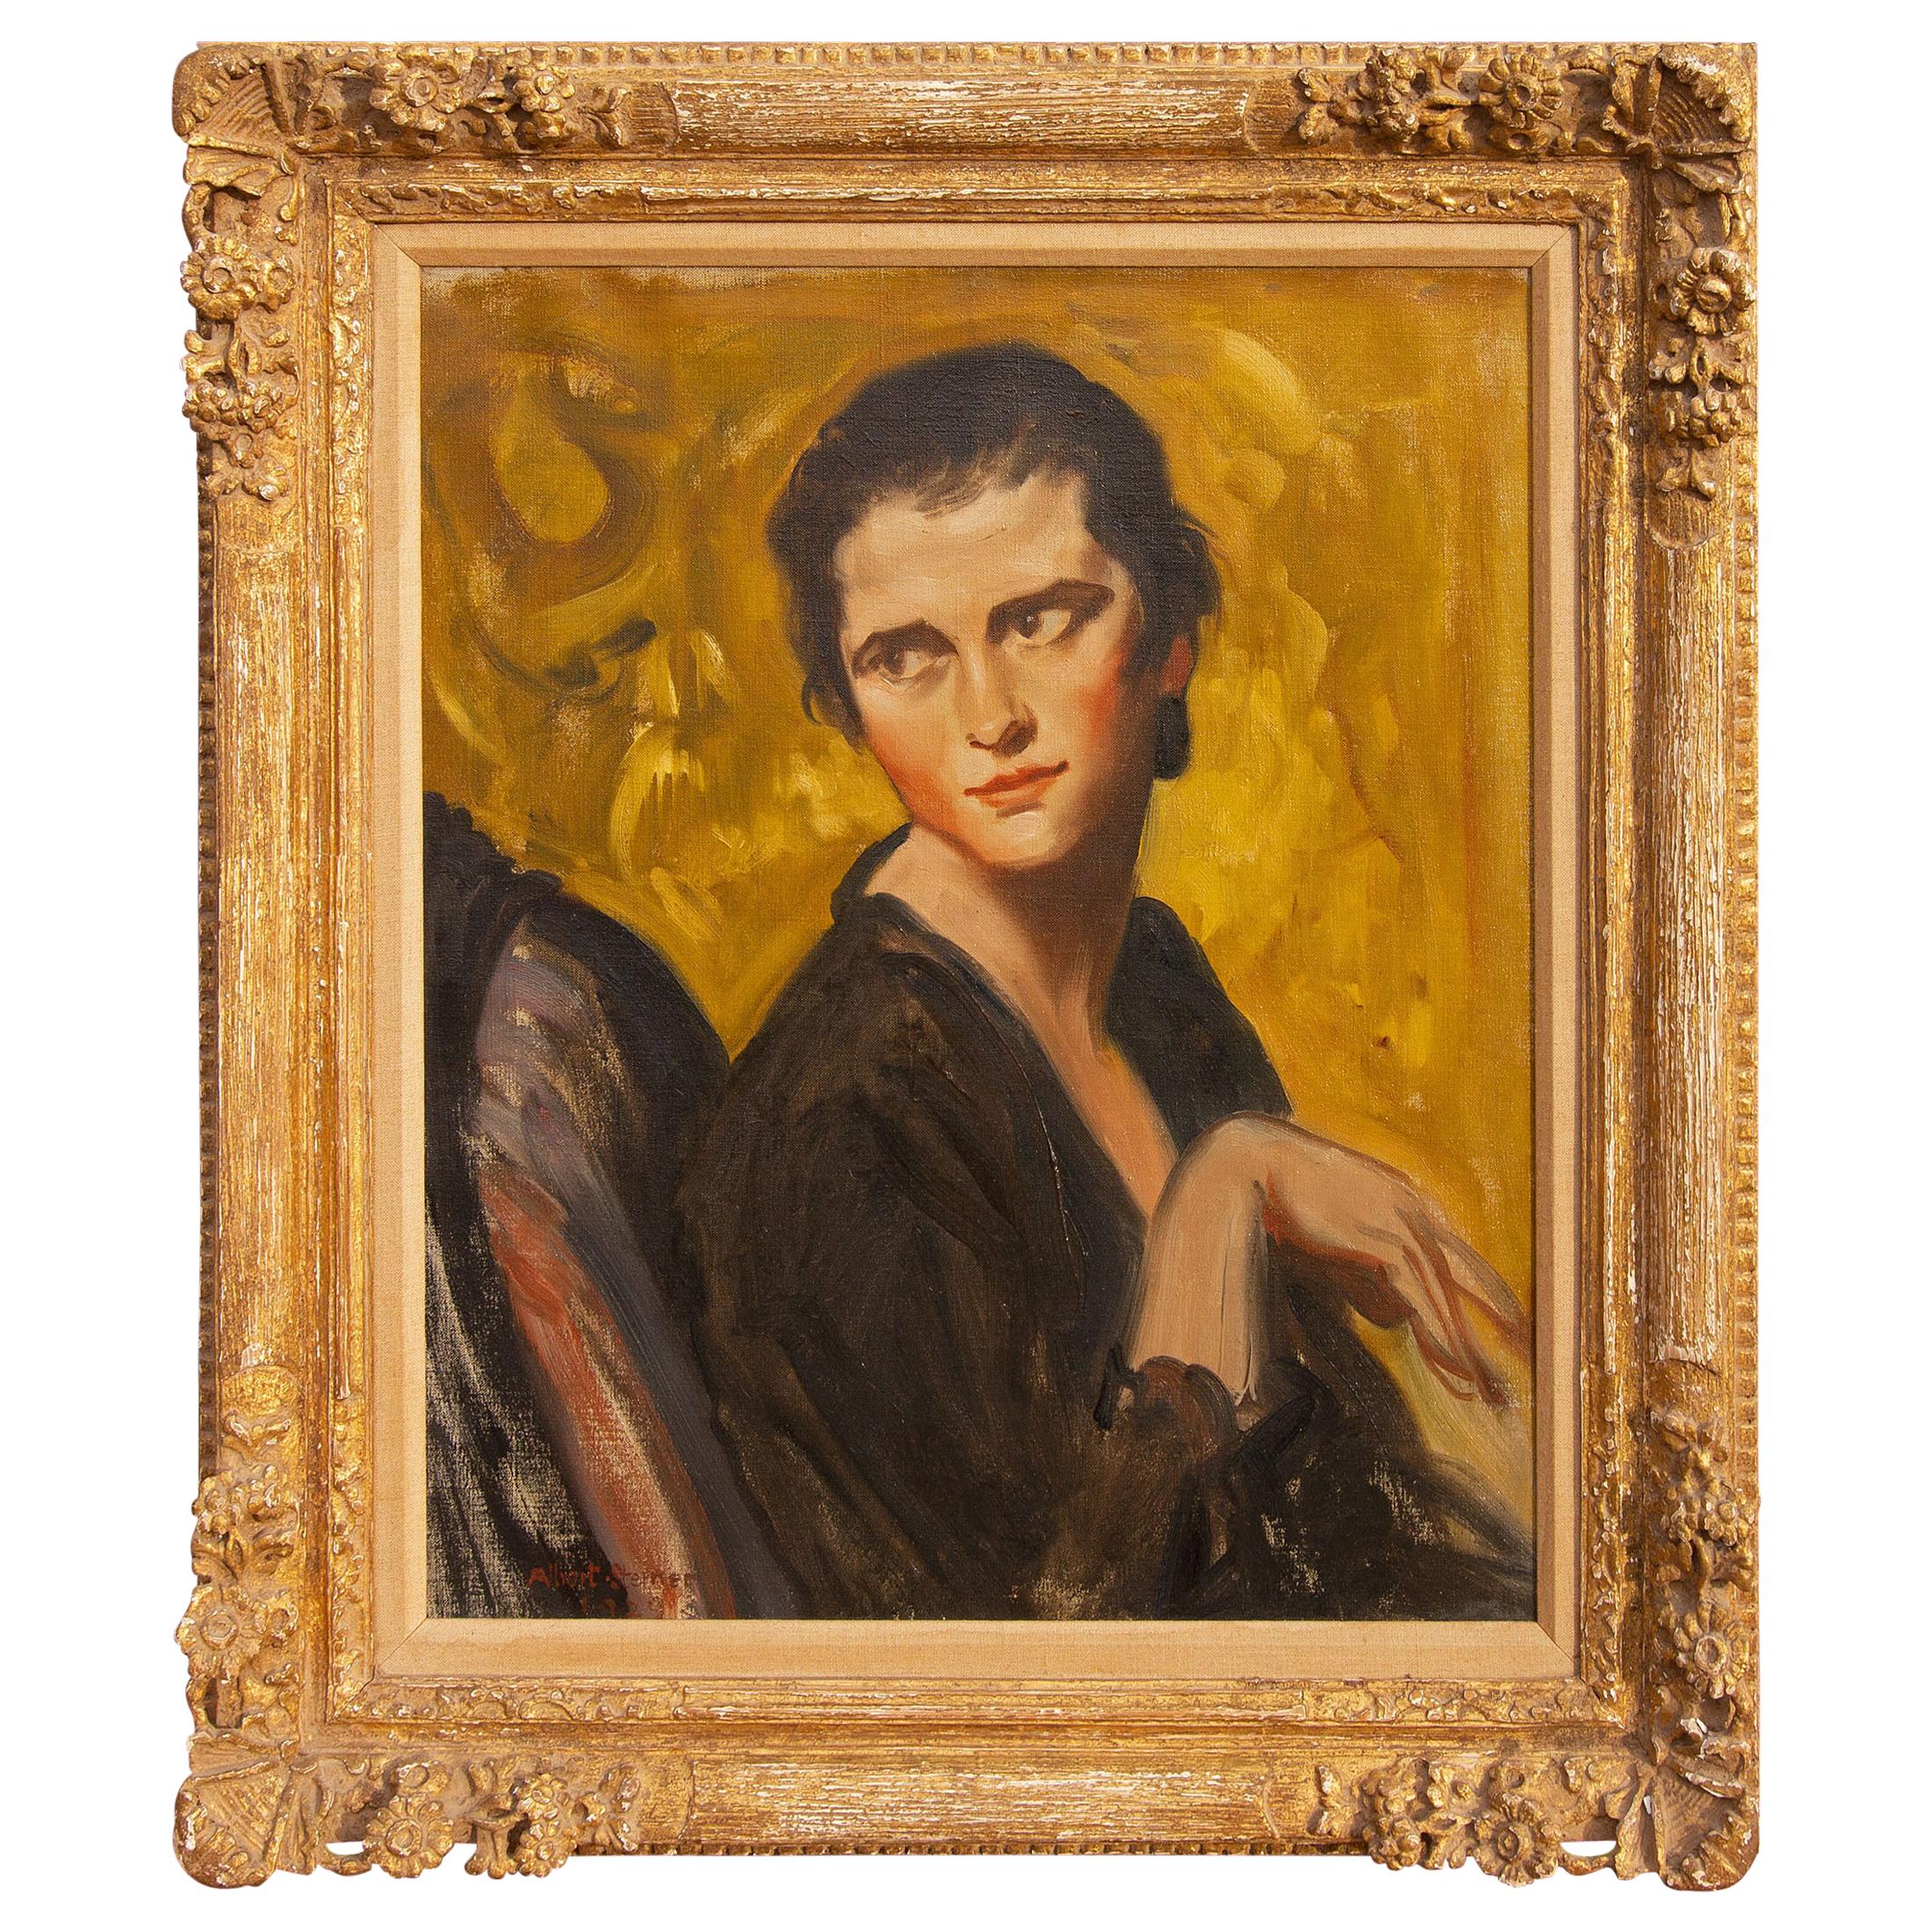 Portrait Painting of "Vivienne" by Albert Sterner 1929